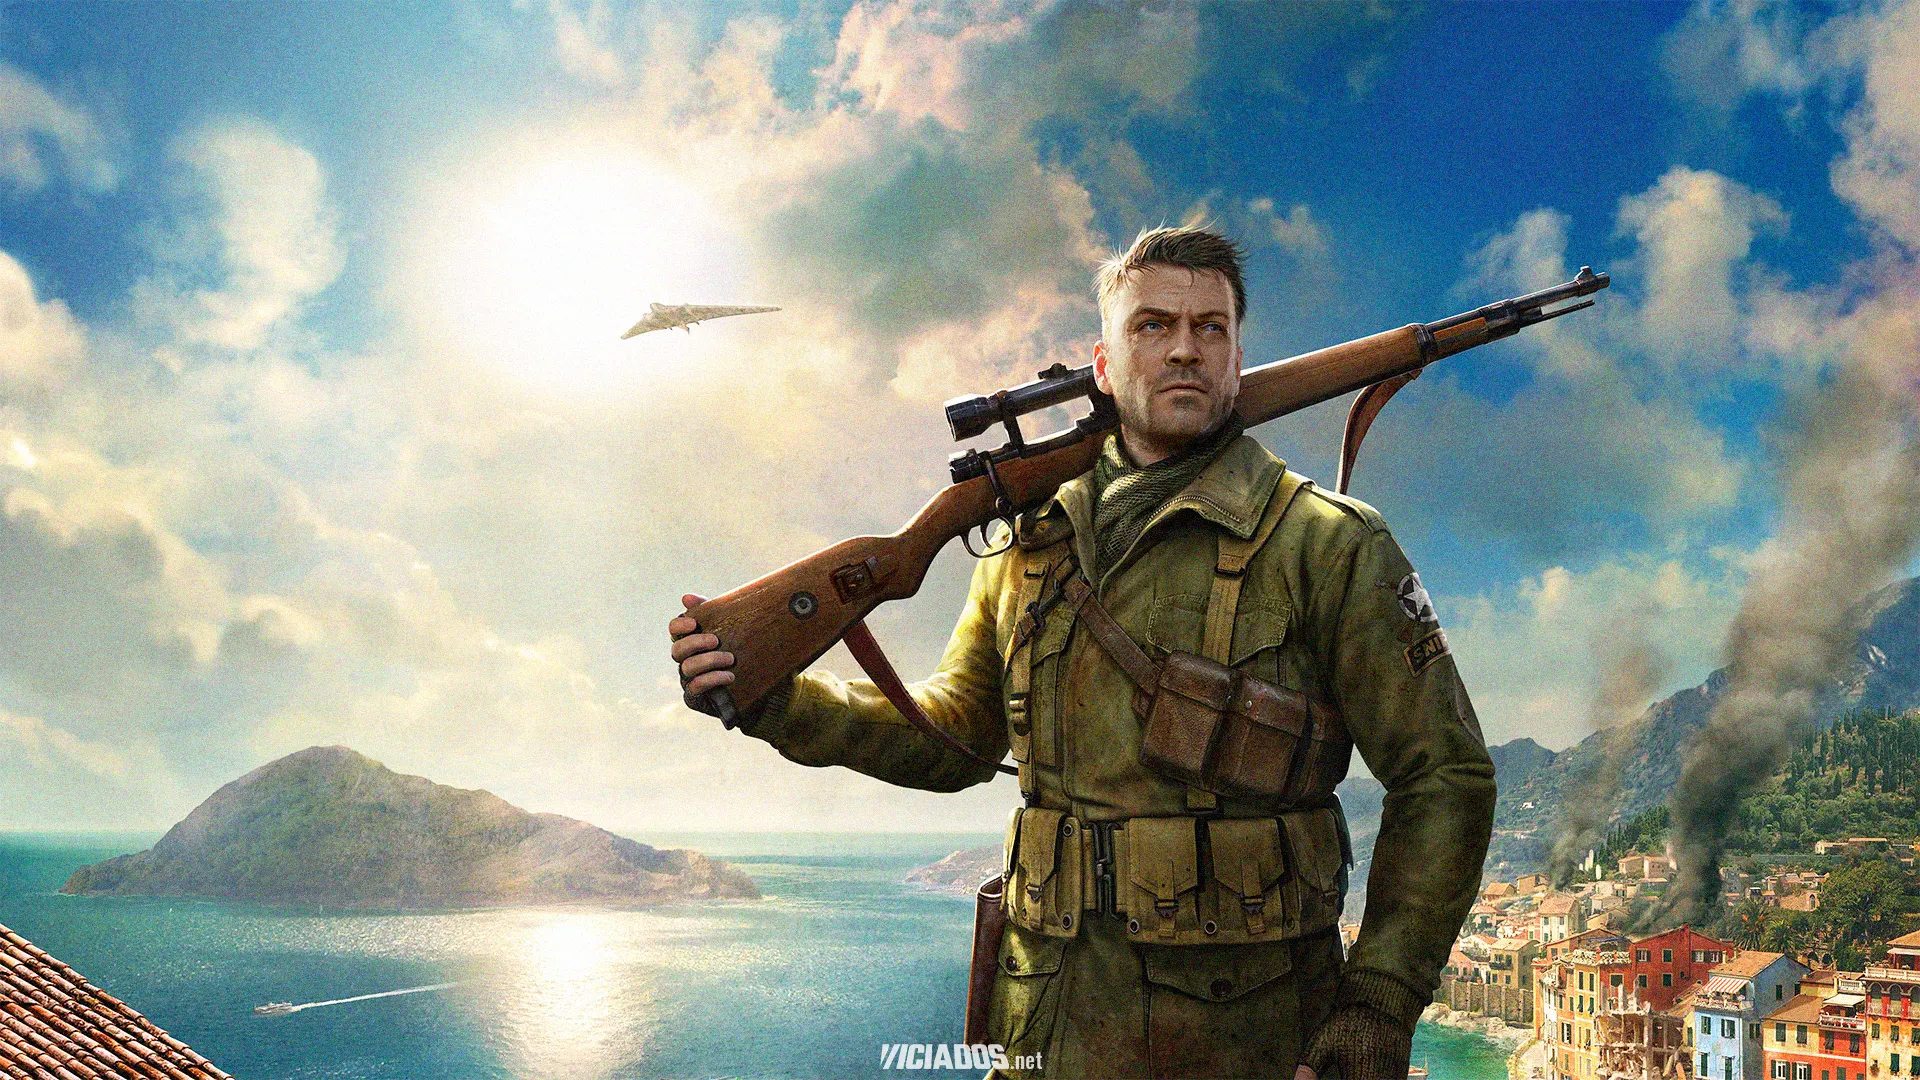 Sniper Elite 4 com 90% de desconto fica muito barato na Steam; Corra para comprar! 2023 Viciados